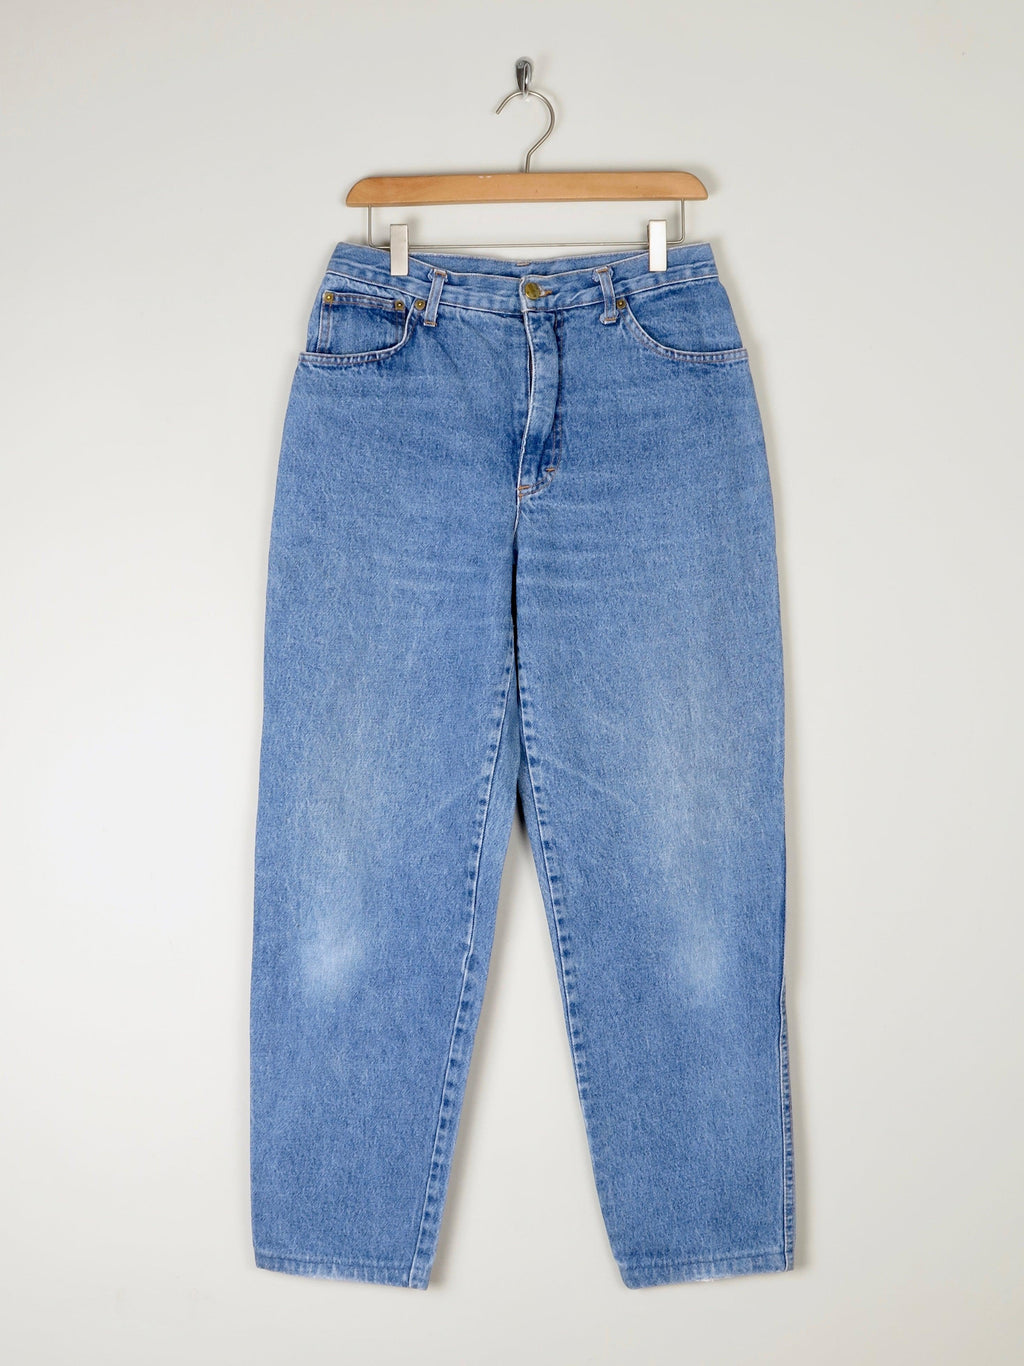 Blue Vintage Mom Jeans Curvy Shape 30/30 - The Harlequin